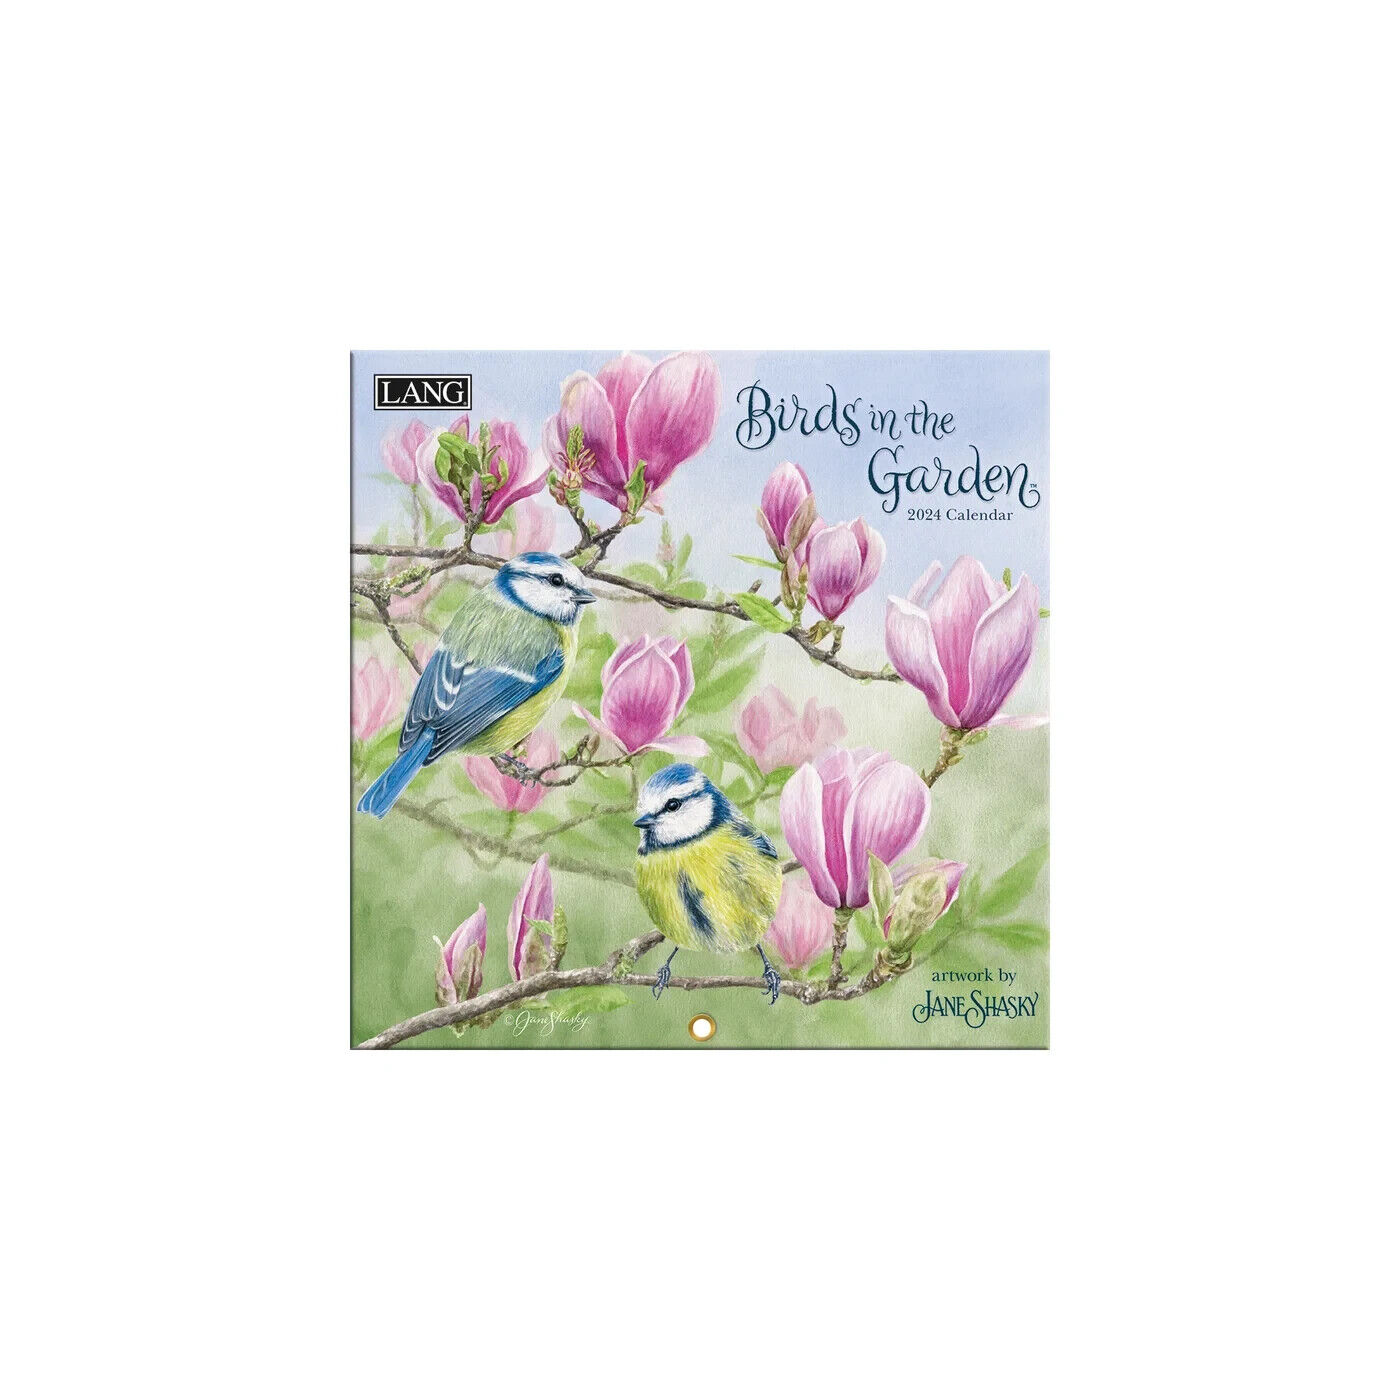 Lang Birds in the Garden 2024 Mini Wall Calendar w